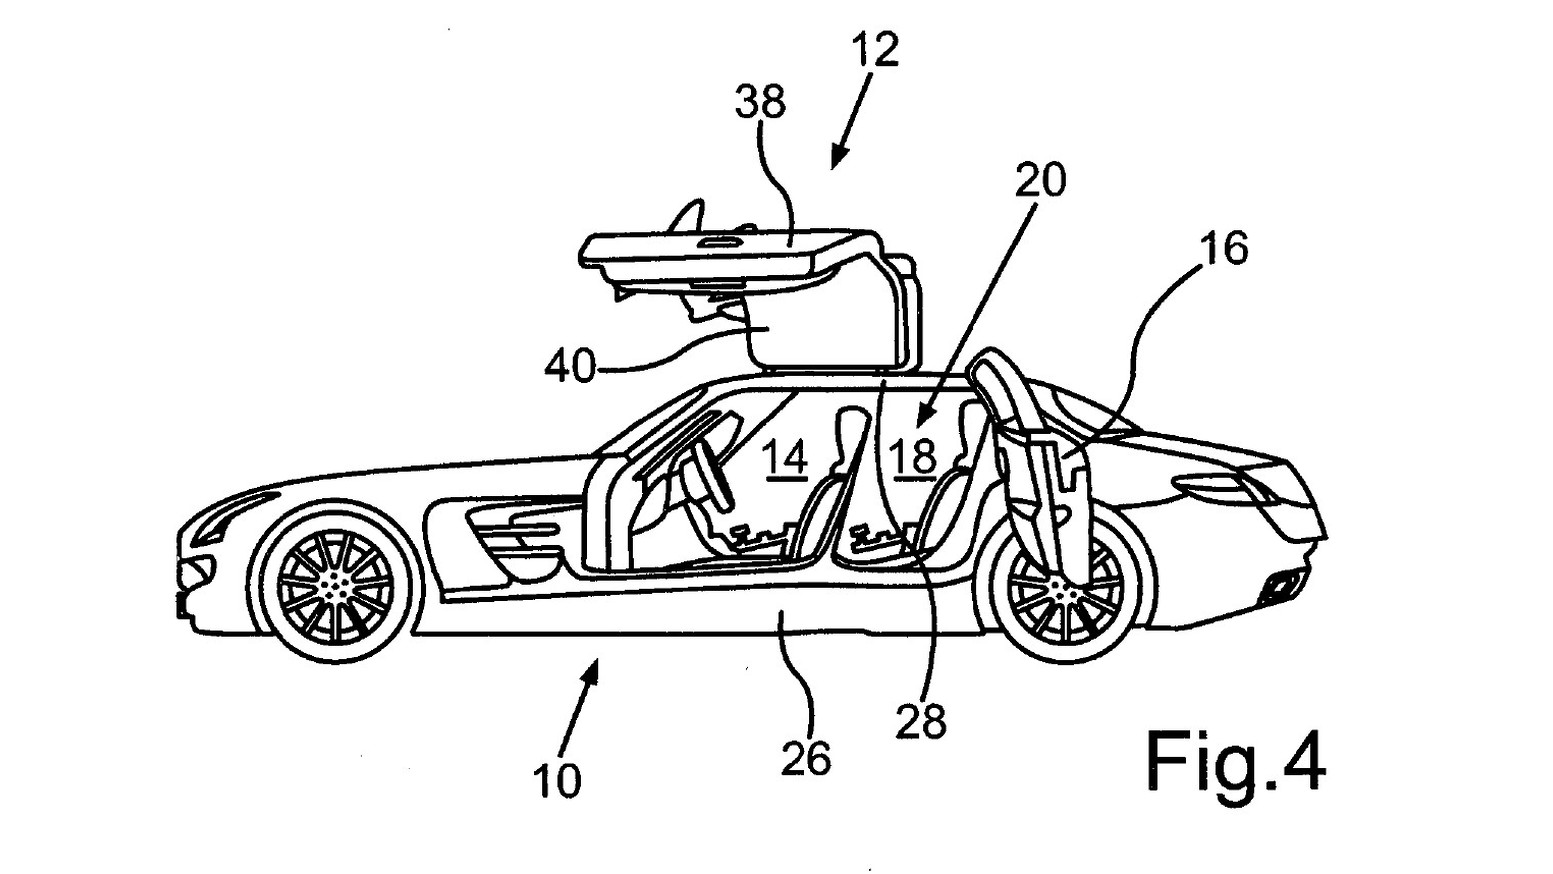 Four-door SLS AMG patent images 